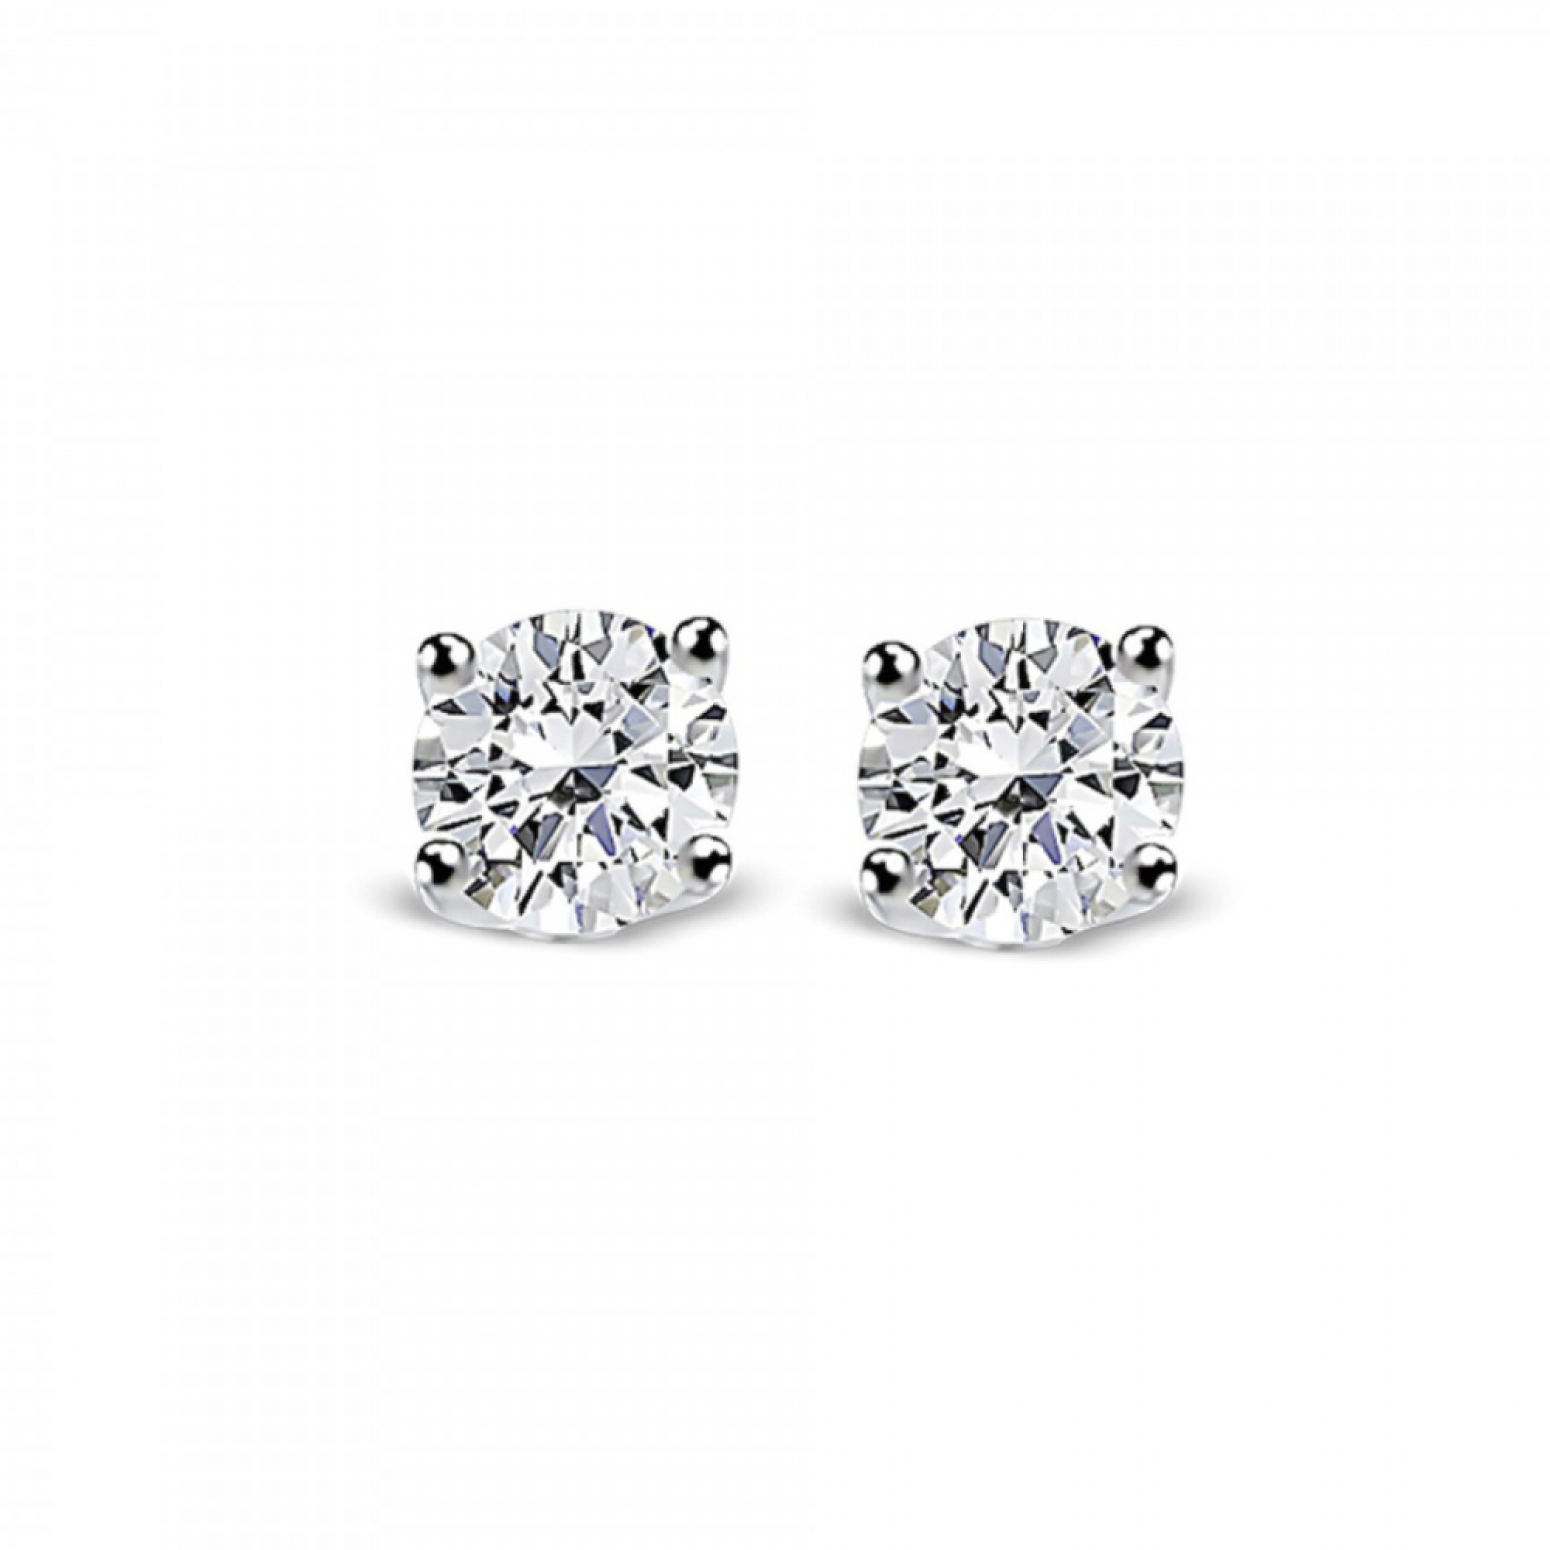 Solitaire earrings 18K white gold with diamonds 0.62ct, VS2,G from GIA sk4156 EARRINGS Κοσμηματα - chrilia.gr